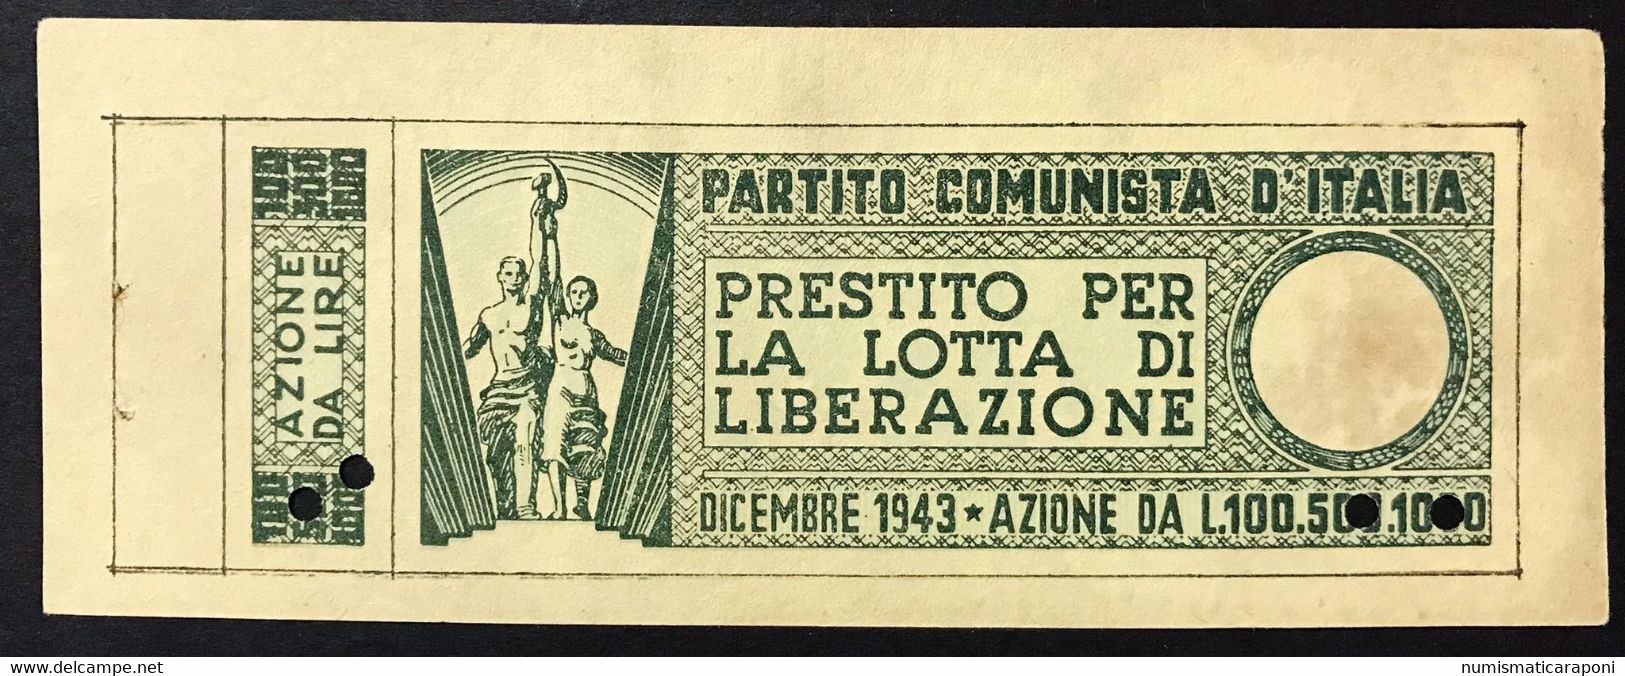 100 LIRE PARTITO COMUNISTA D'ITALIA LOTTA DI LIBERAZIONE DICEMBRE 1943 Lotto 4166 - Allied Occupation WWII